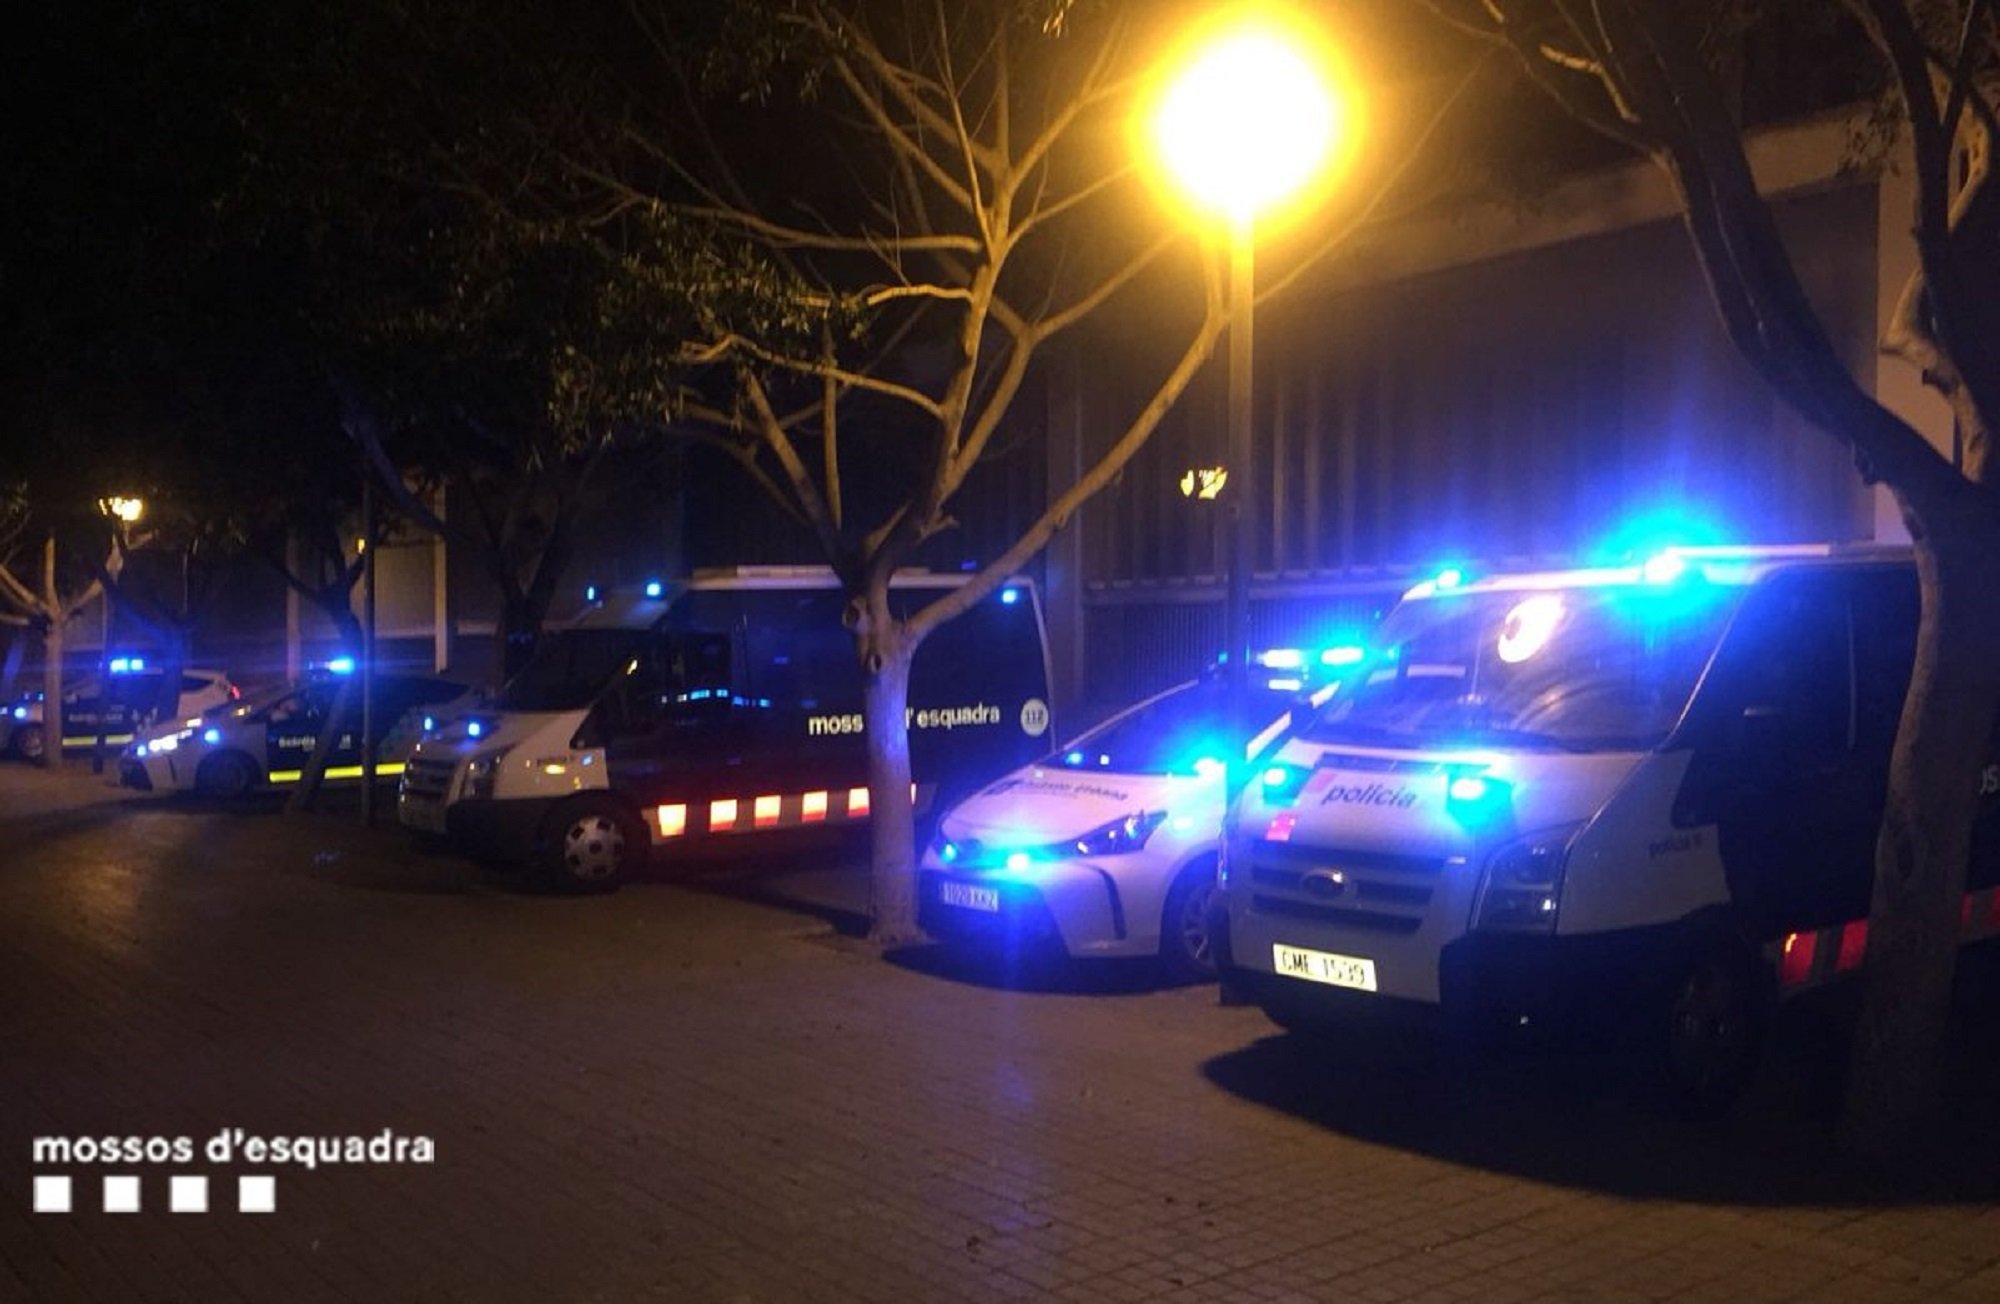 38 detenidos en una noche en la zona de ocio nocturno de la Barceloneta